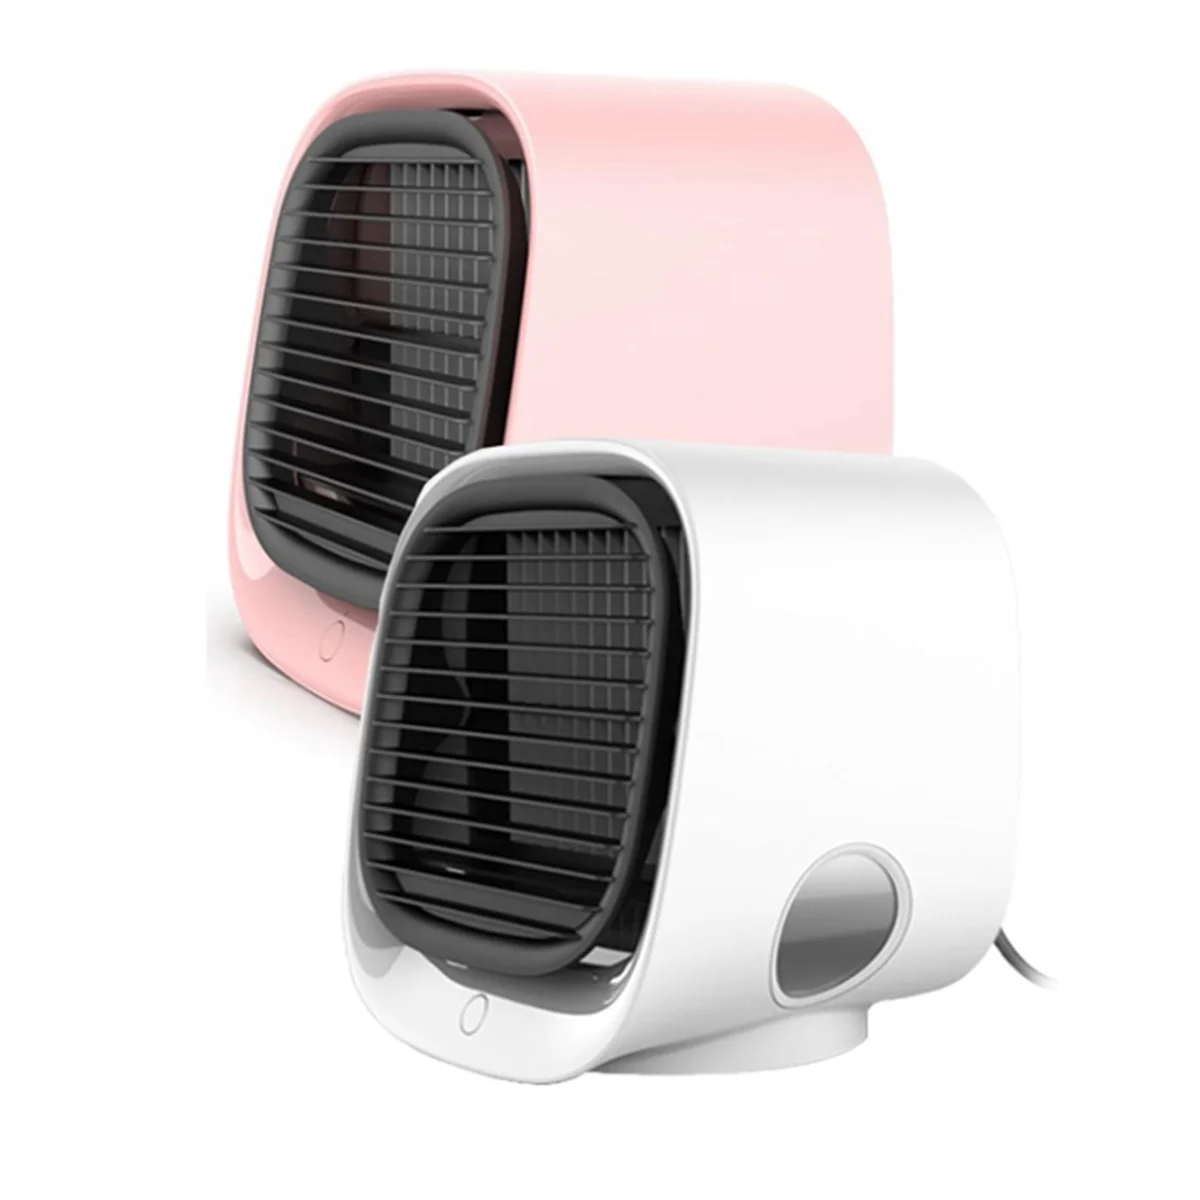 

Oribreeze Air Conditioning,Oribreeze Air Cooler,Ori Breeze Air Cooler,Oribreeze Portable Air Conditioner